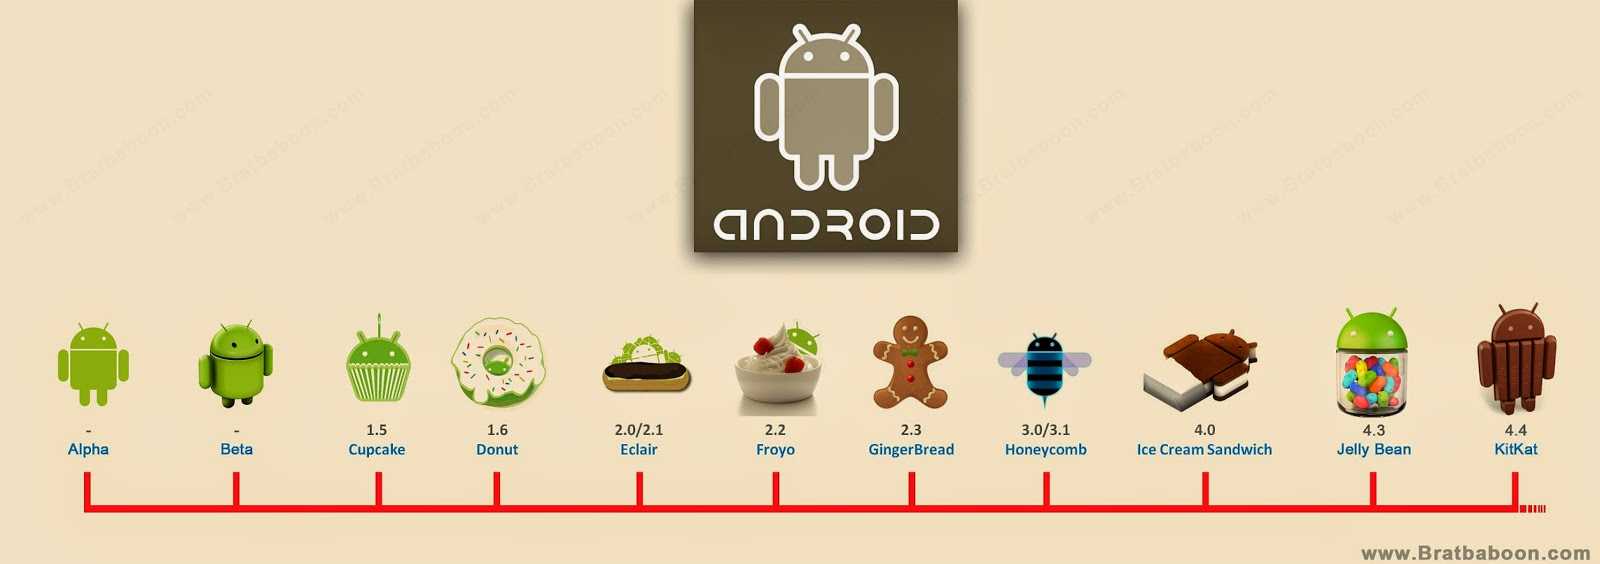 Как узнать вашу версию android установленную на смартфоне